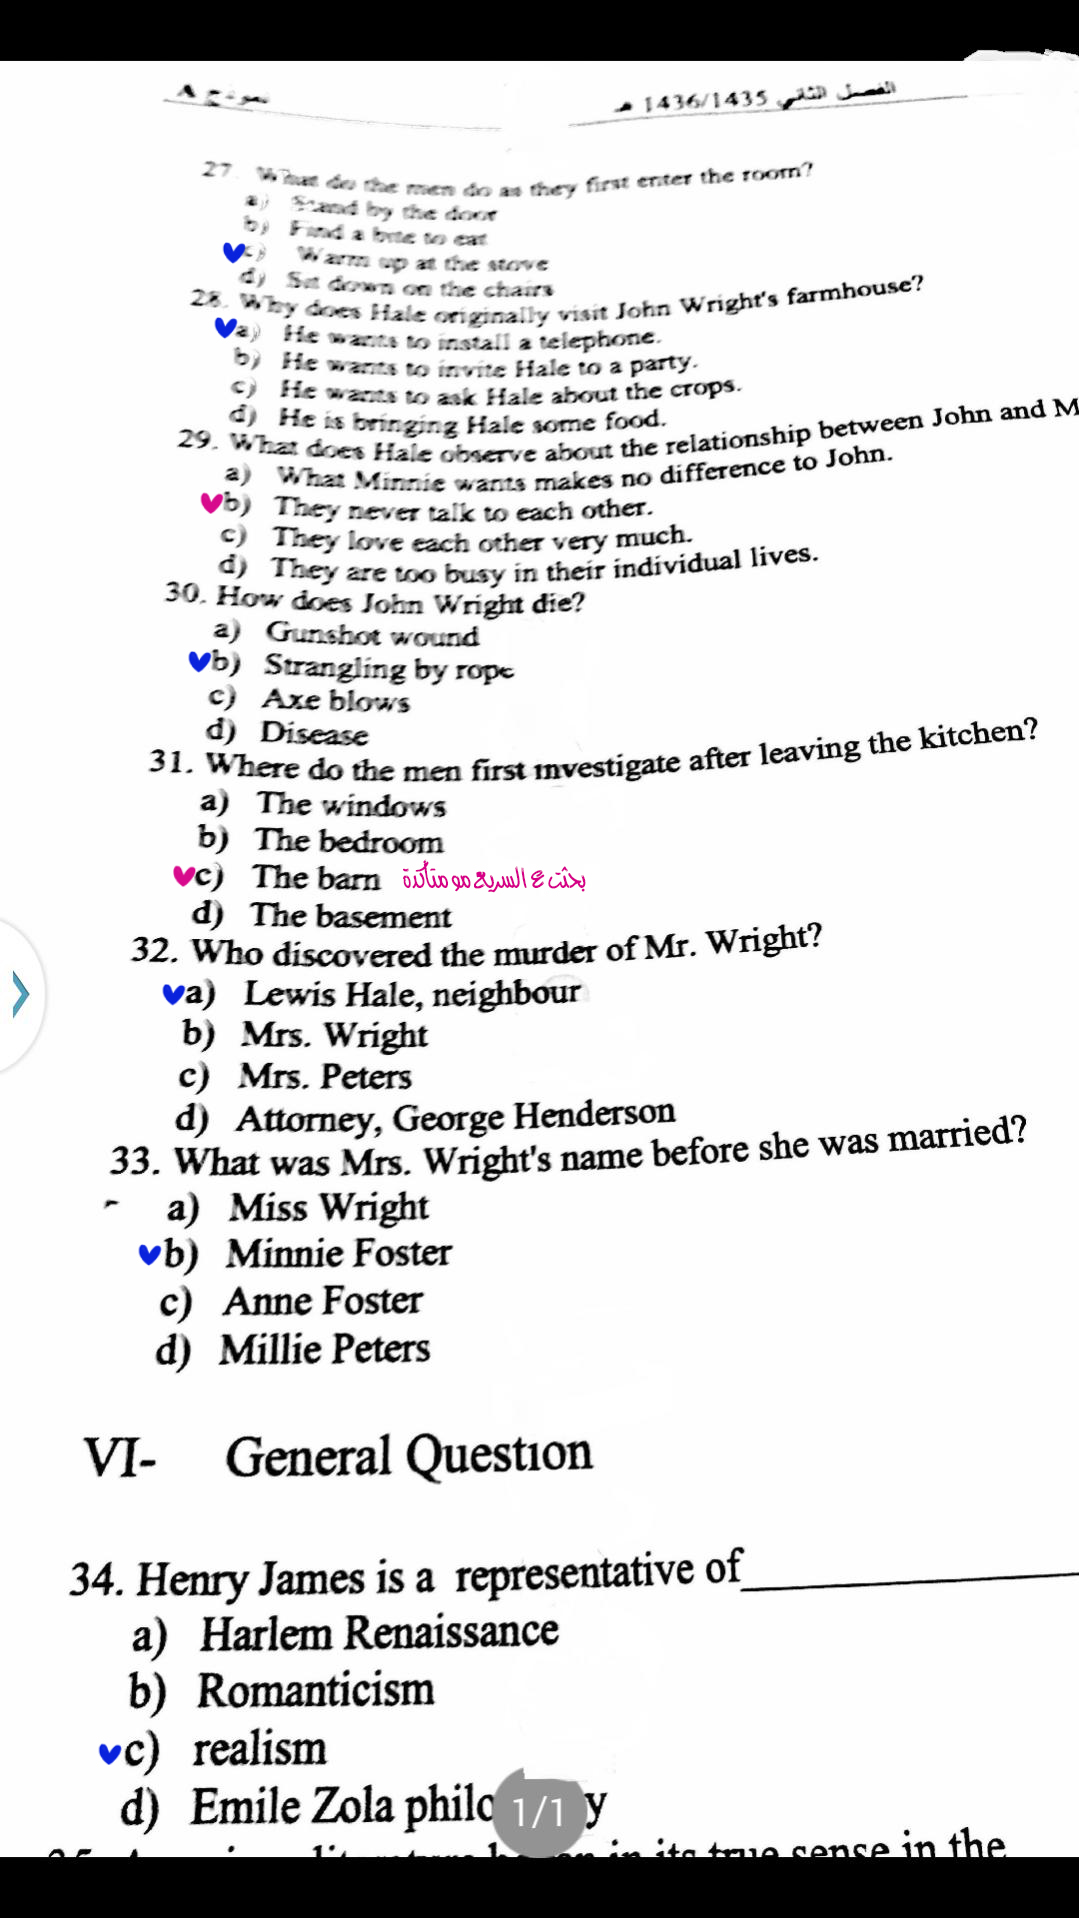 اسئلة اختبار مدخل إلى الأدب الأمريكي الفصل الثاني 1436هـ نموذج (A)